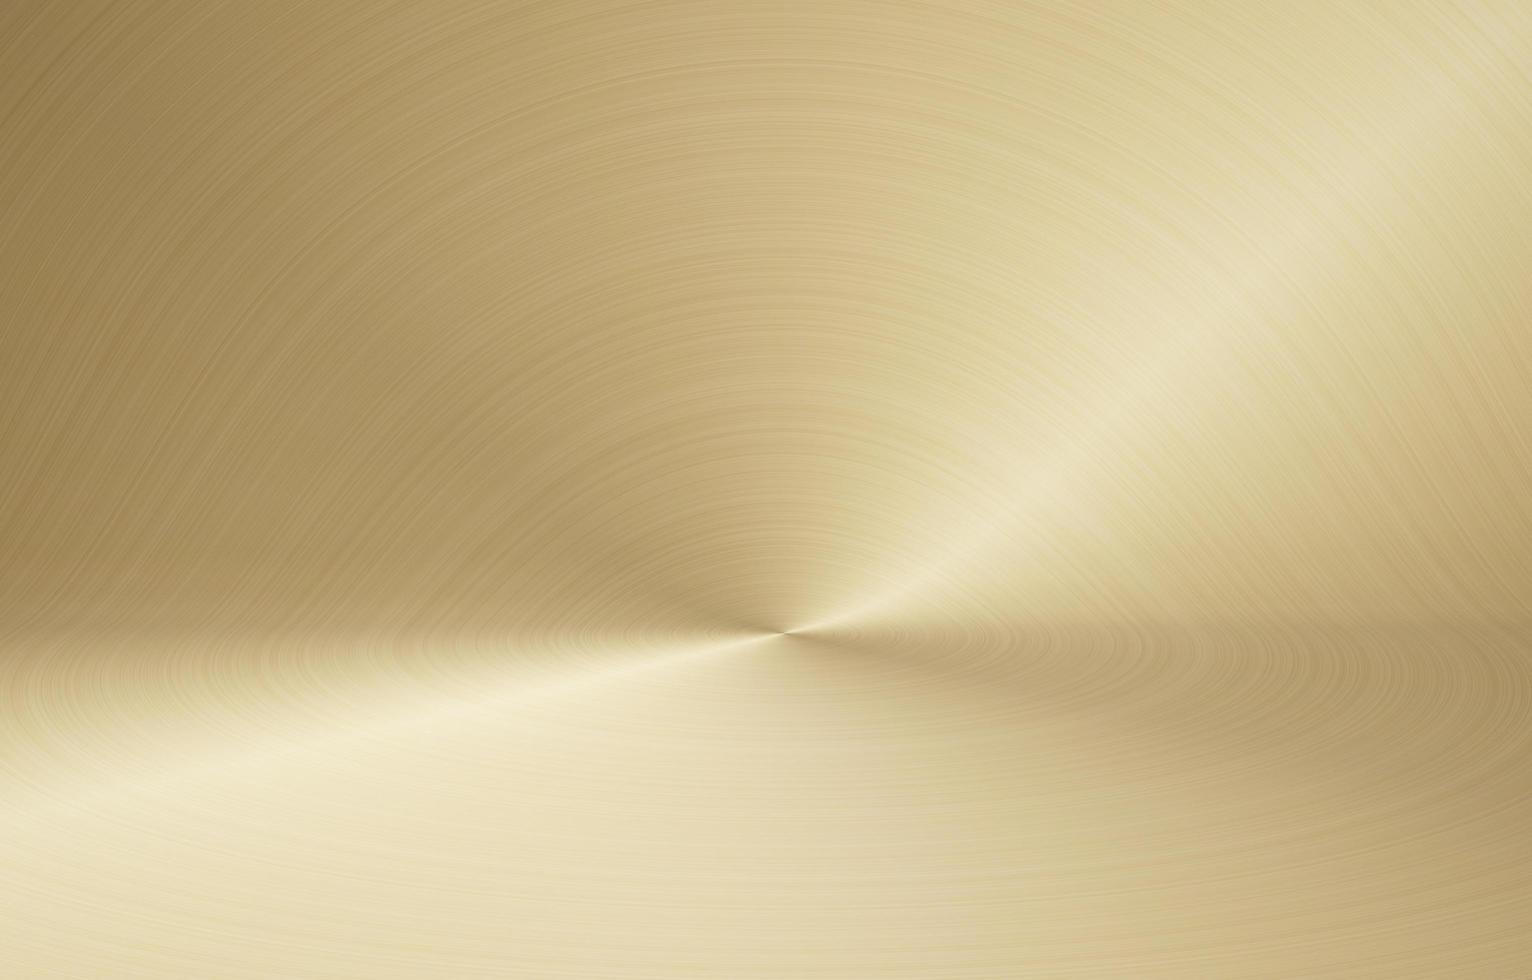 Illustrazione 3D di una superficie dorata lucida, posizionata continuamente da terra per formare un muro foto